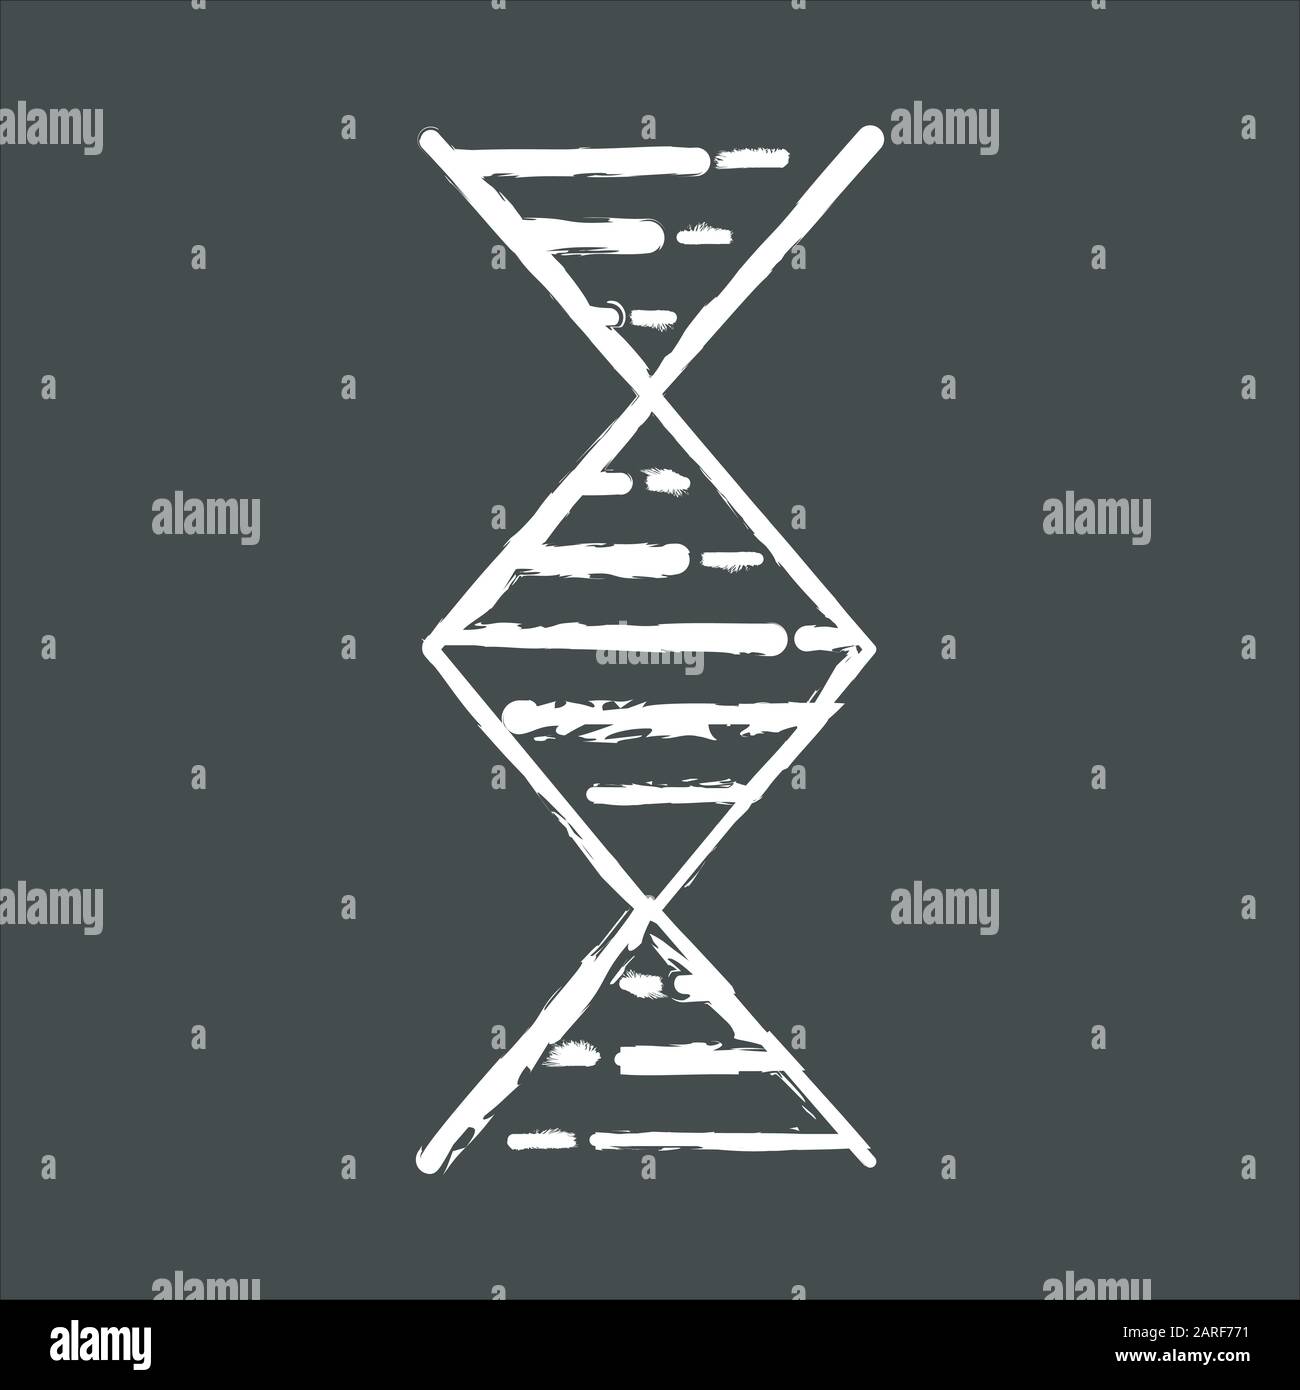 Diamantförmige Kreidesymbole für DNA-Helix. Desoxyribonukleinsäure, Nukleinsäurestruktur. Spiralstrang. Chromosom. Molekularbiologie. Genetisches Code. Genom. Stock Vektor